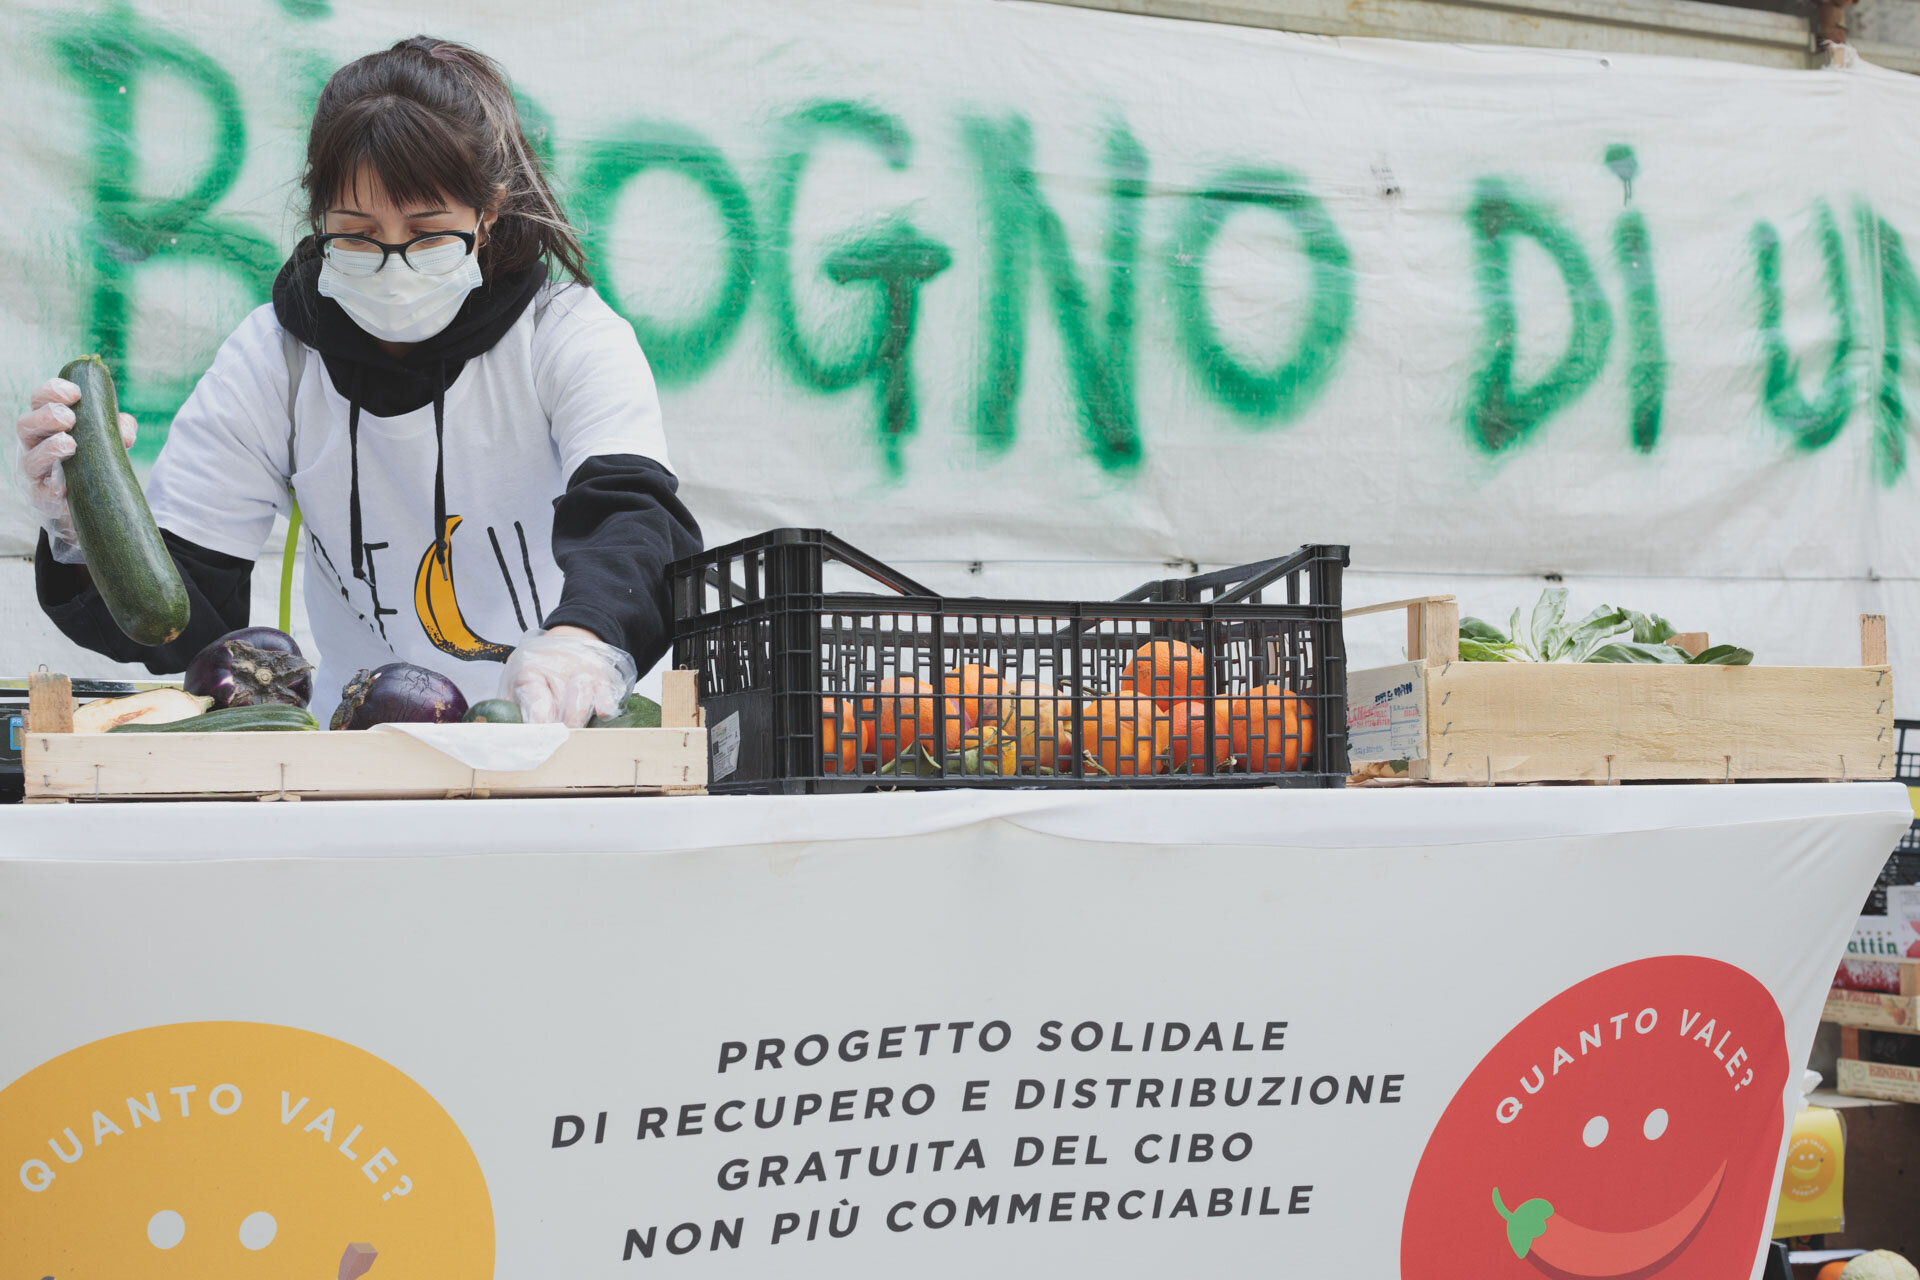 Recup combate lo spreco alimentare. Acymauromig Alice Soncina Mauro Migliorati Fotografo Fotografia Milano Brescia Desenzano